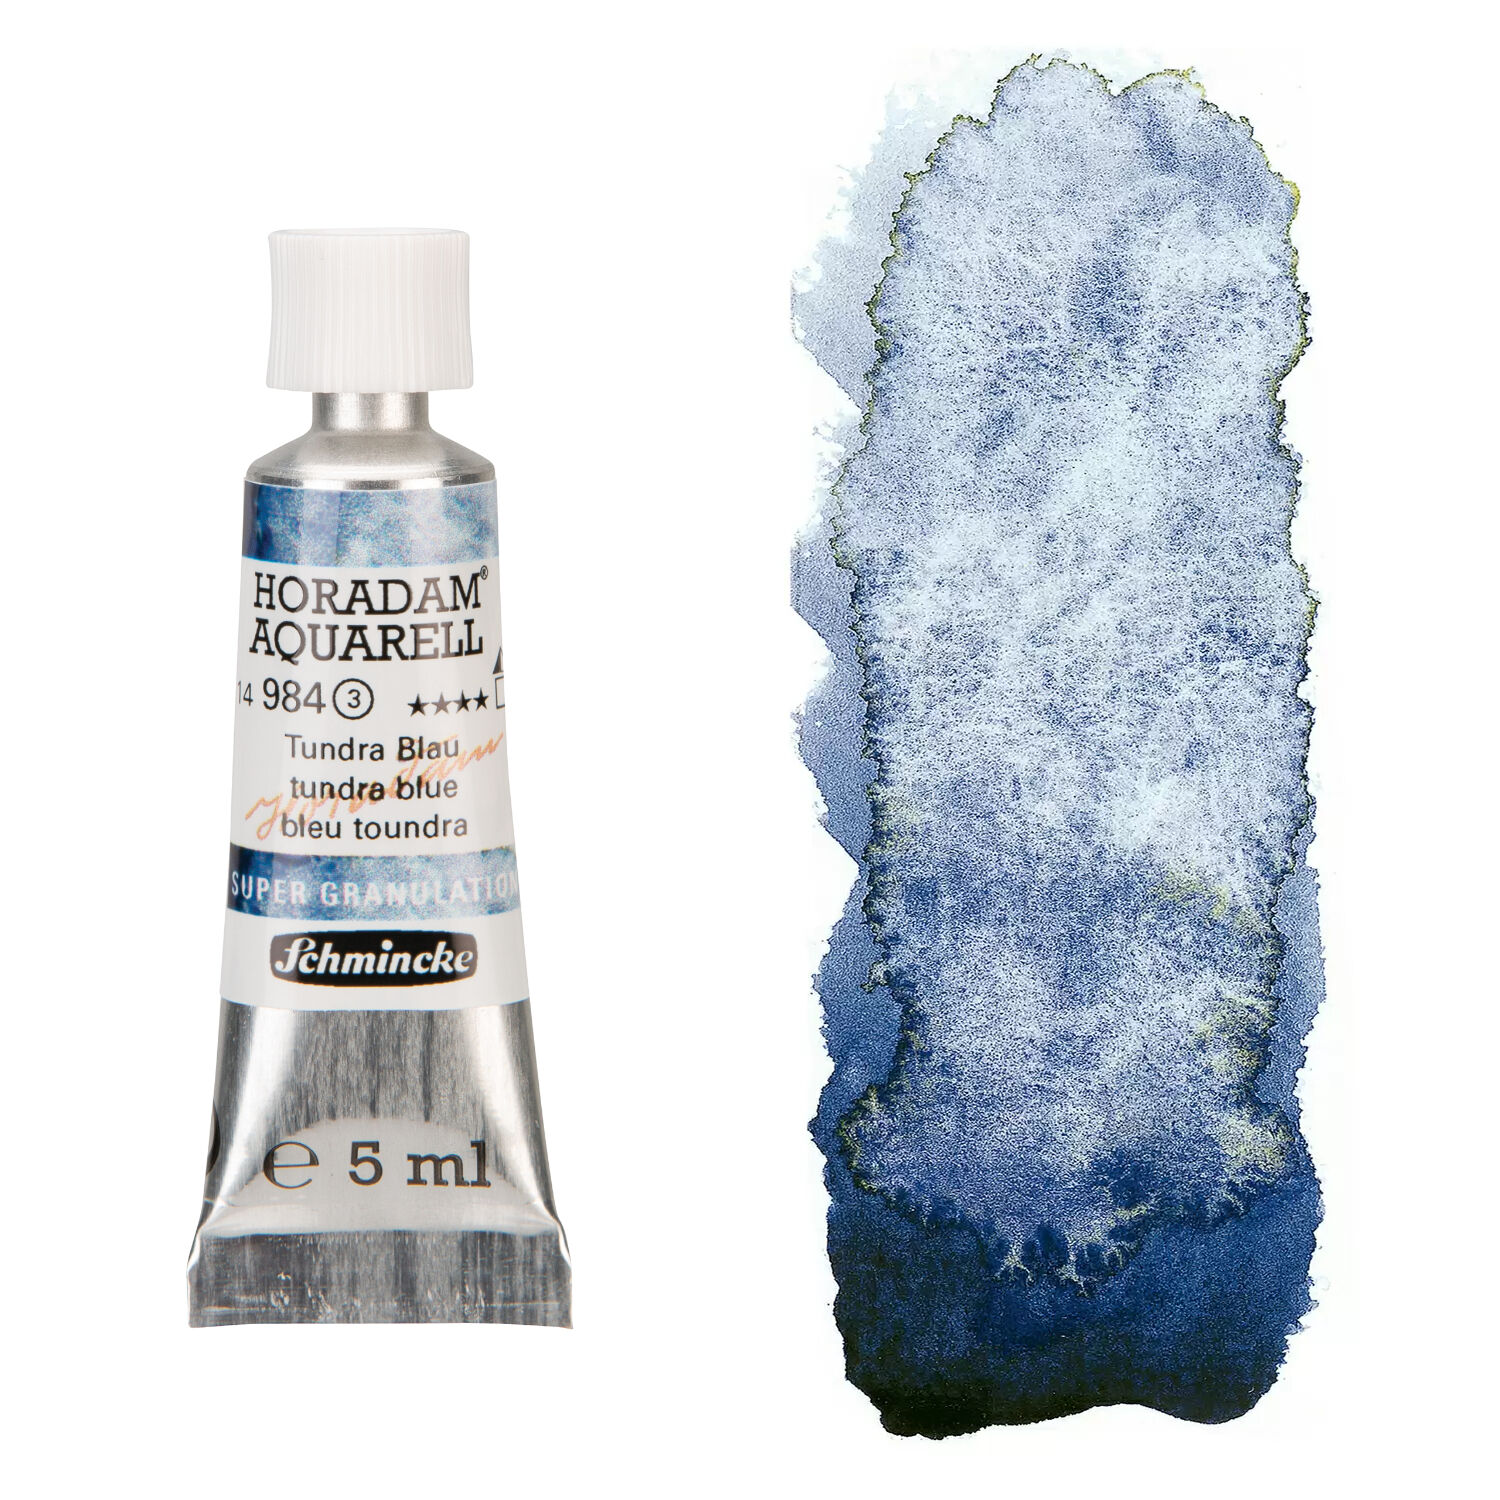 NEU Horadam Aquarell Super Granulation 5 ml, Tundra Blau